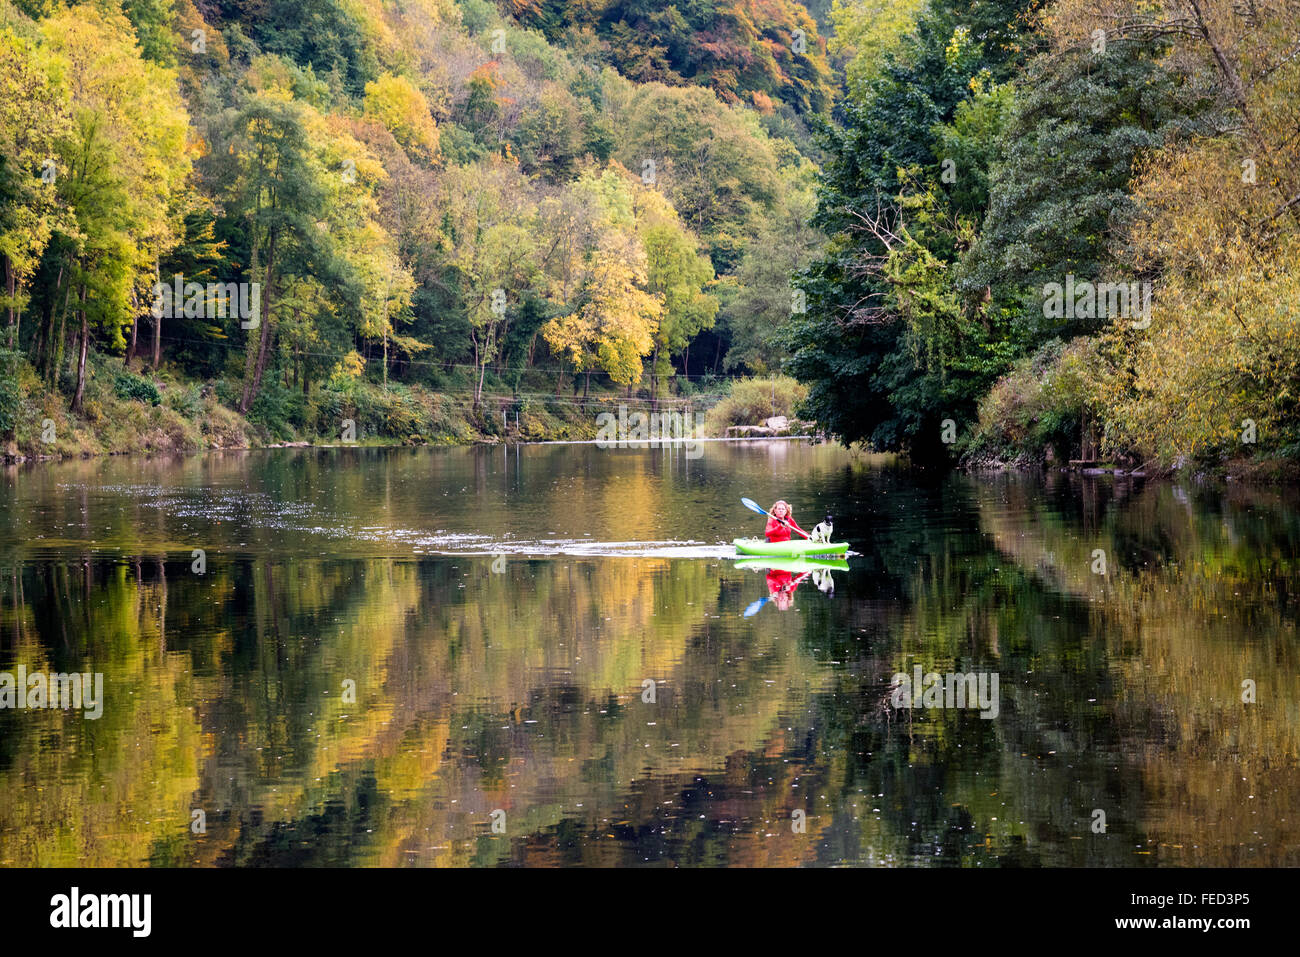 Kayaking on River Wye, Herefordshire, UK Stock Photo